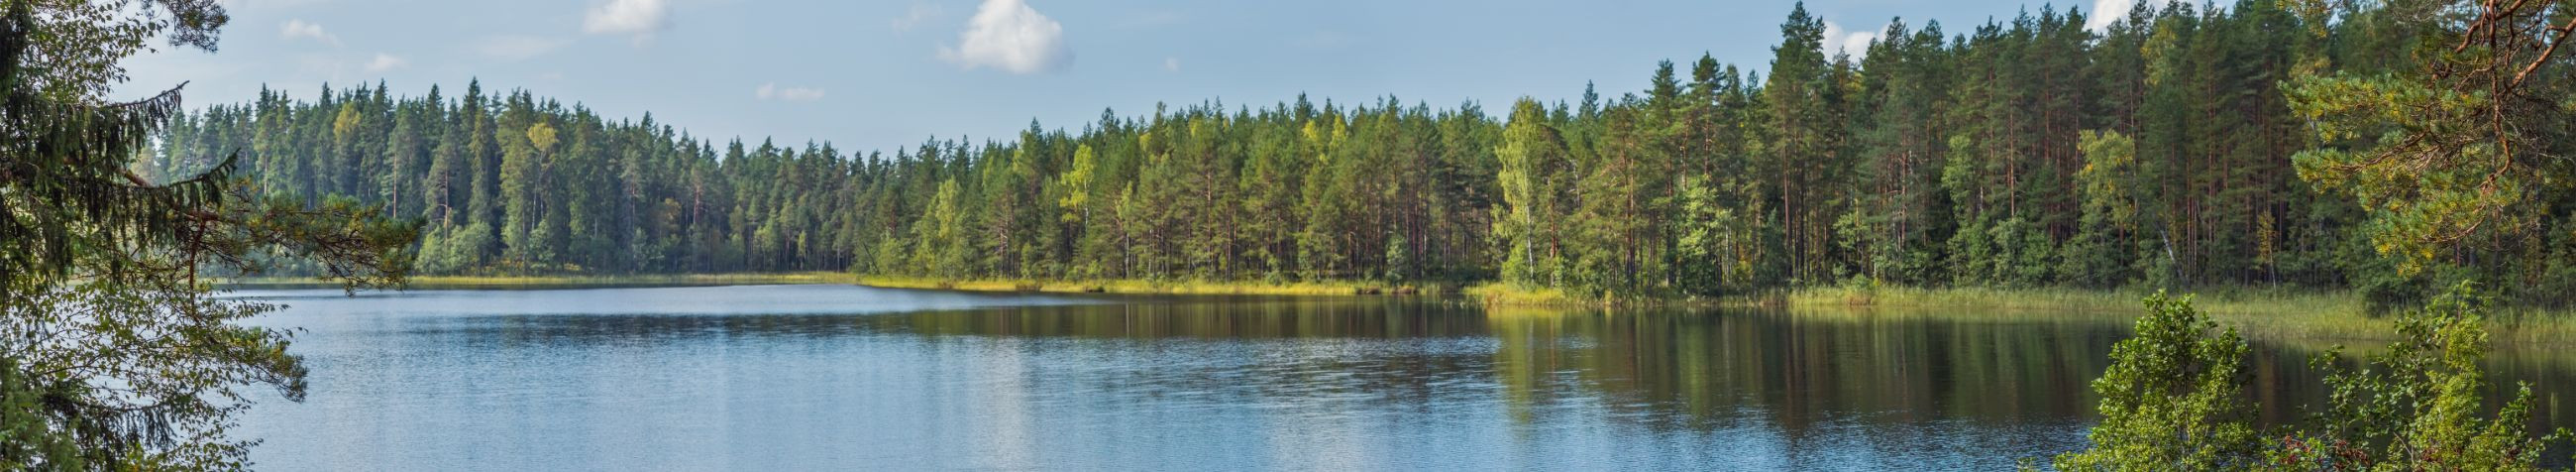 Eesti Keskkonnateenused AS on juhtiv jäätmekäitlus- ja kommunaalteenuseid pakkuv ettevõte, mis spetsialiseerub olmejäätmete kogumisele, ehitusjäätmete käitlemisele, taaskasutatavate jäätmete kokkuostule ning mitmetele muudele keskkonnahoidlikele teenustele.